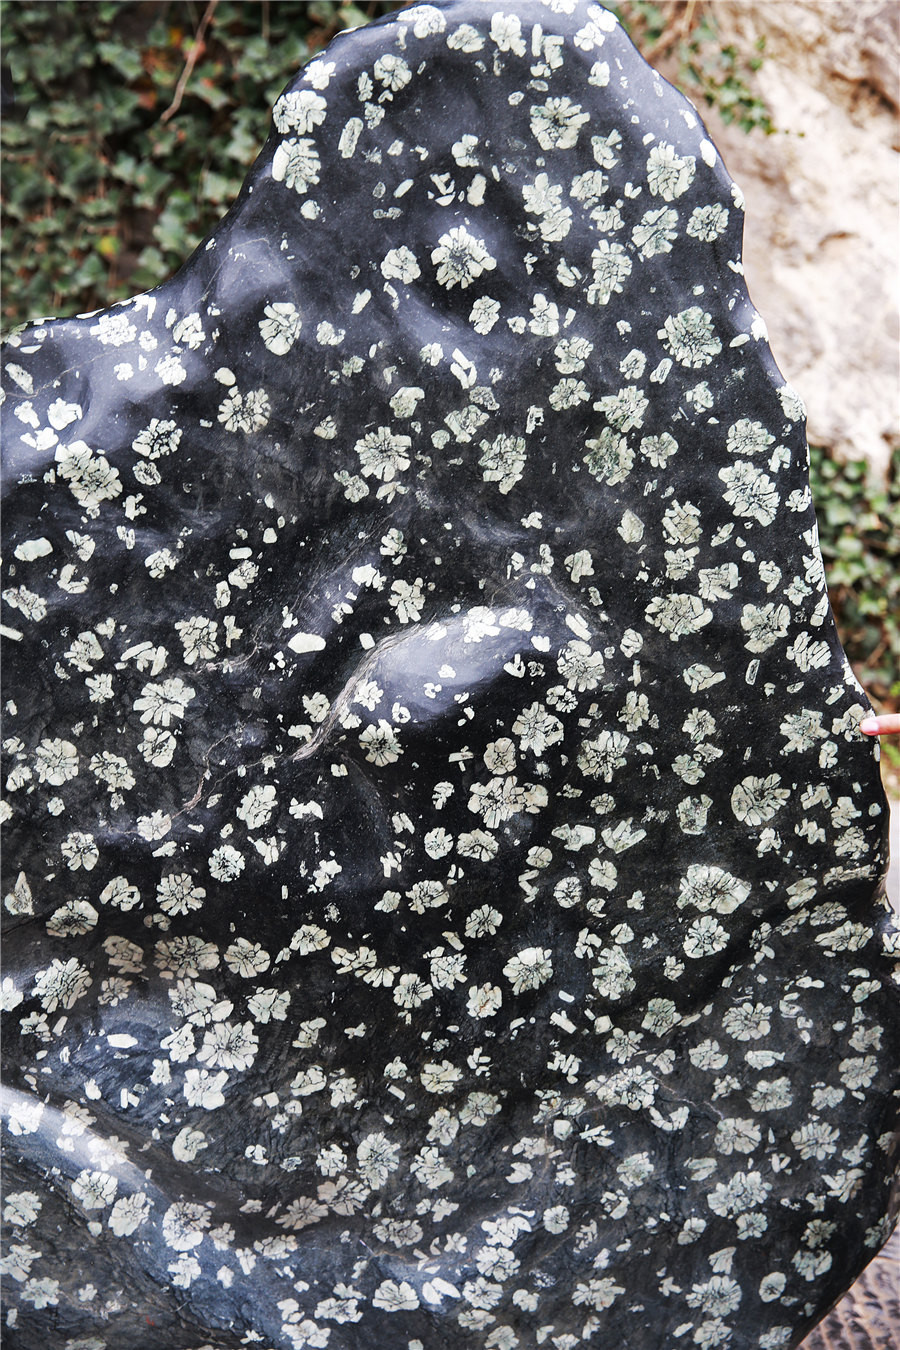 据导游说,这是块天然的梅花石,梅花石是洛阳的特产,石头上的斑纹,特别